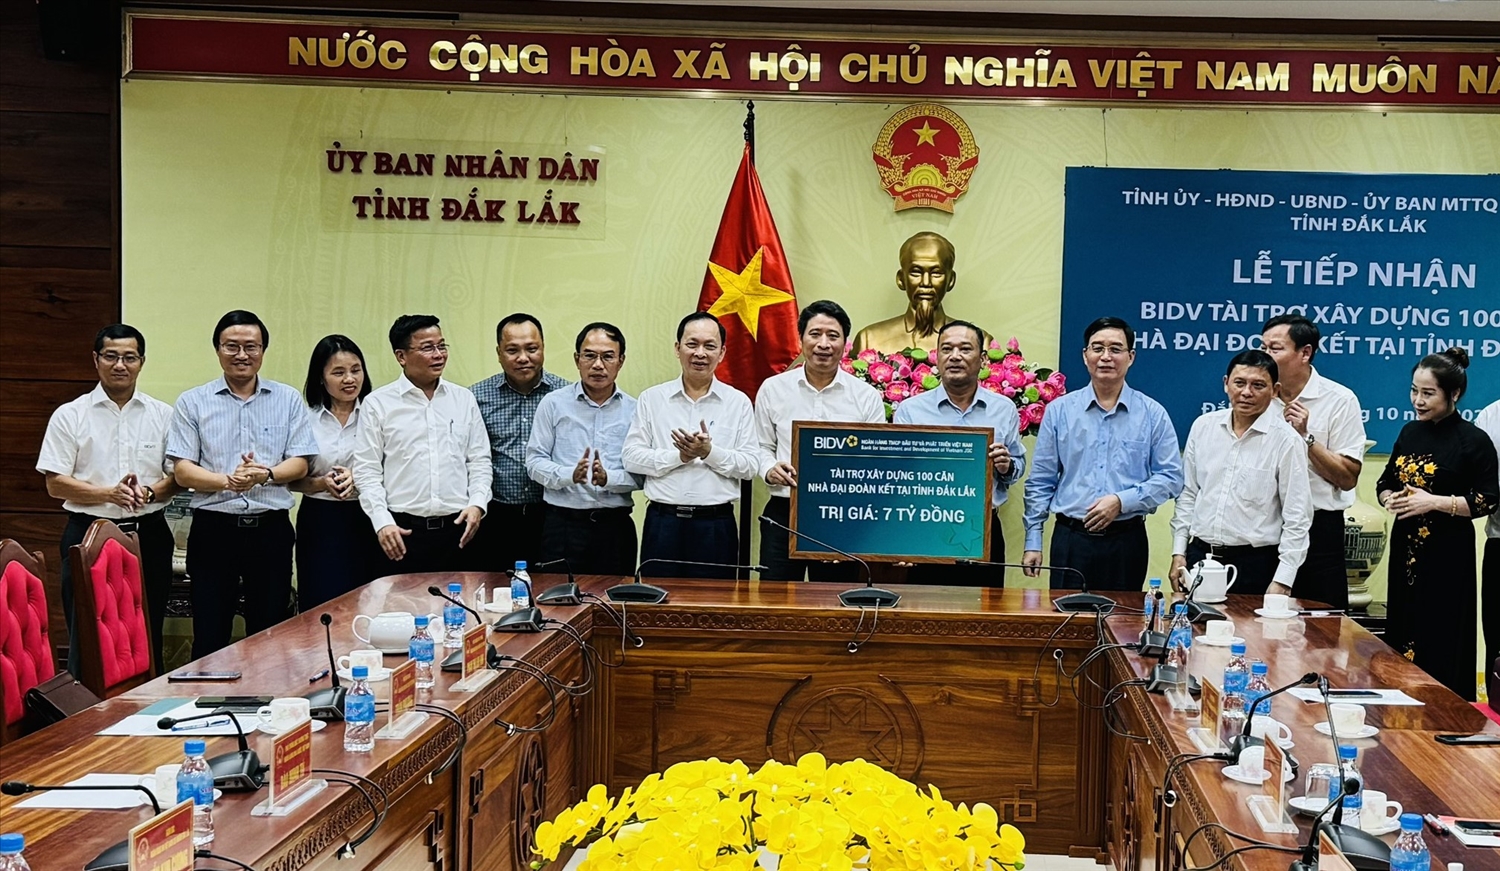 Đại viện phía Ngân hàng Thương mại cổ phần Đầu tư và Phát triển Việt Nam trao bảng tượng trưng